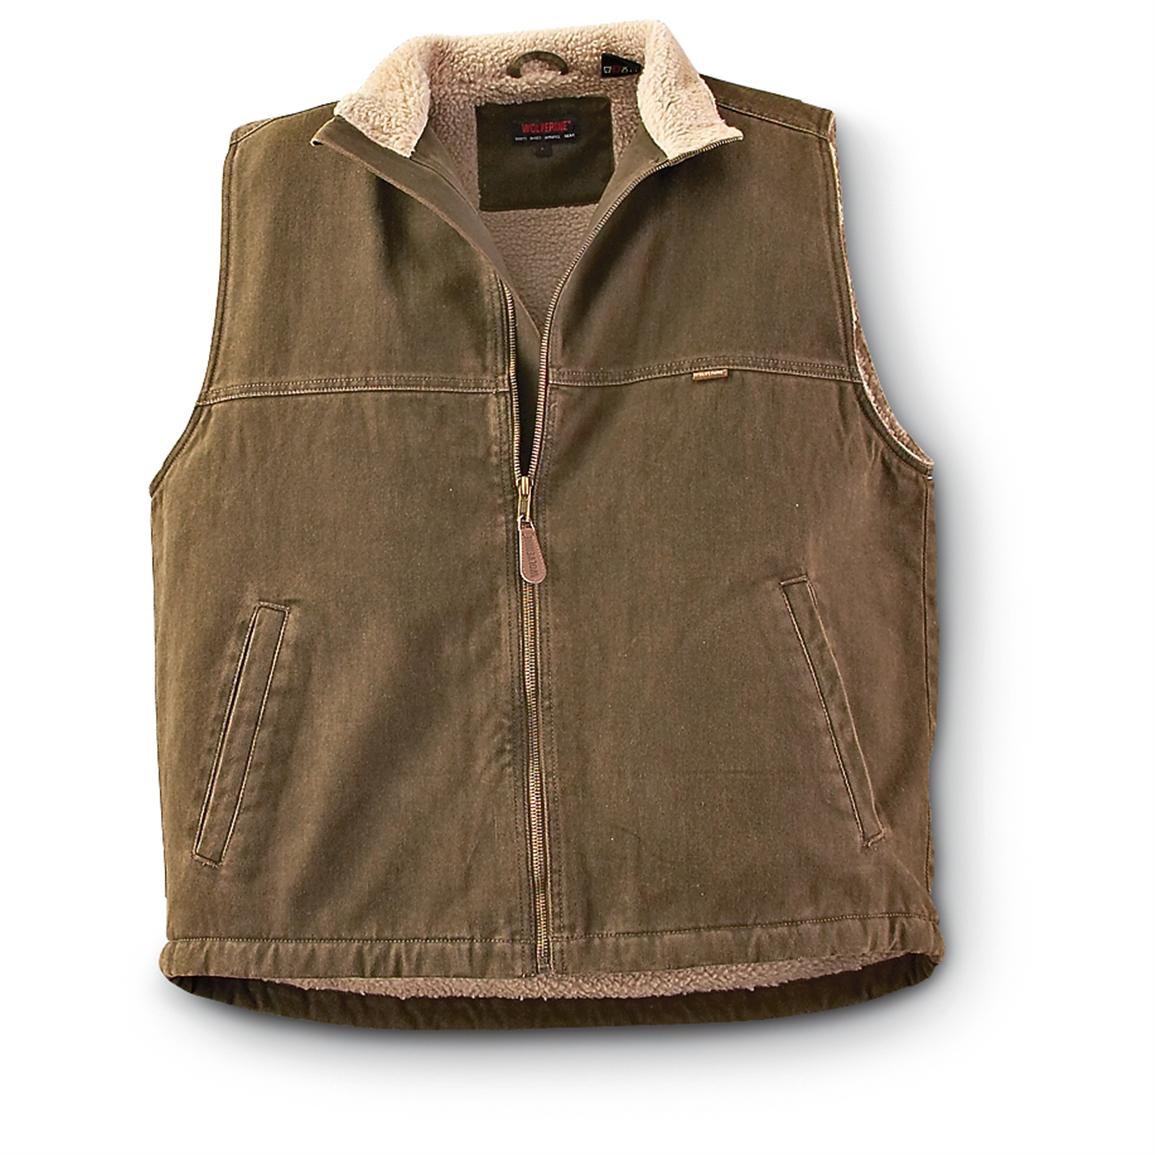 Wolverine® Fleece - lined Vest - 192308, Vests at Sportsman's Guide